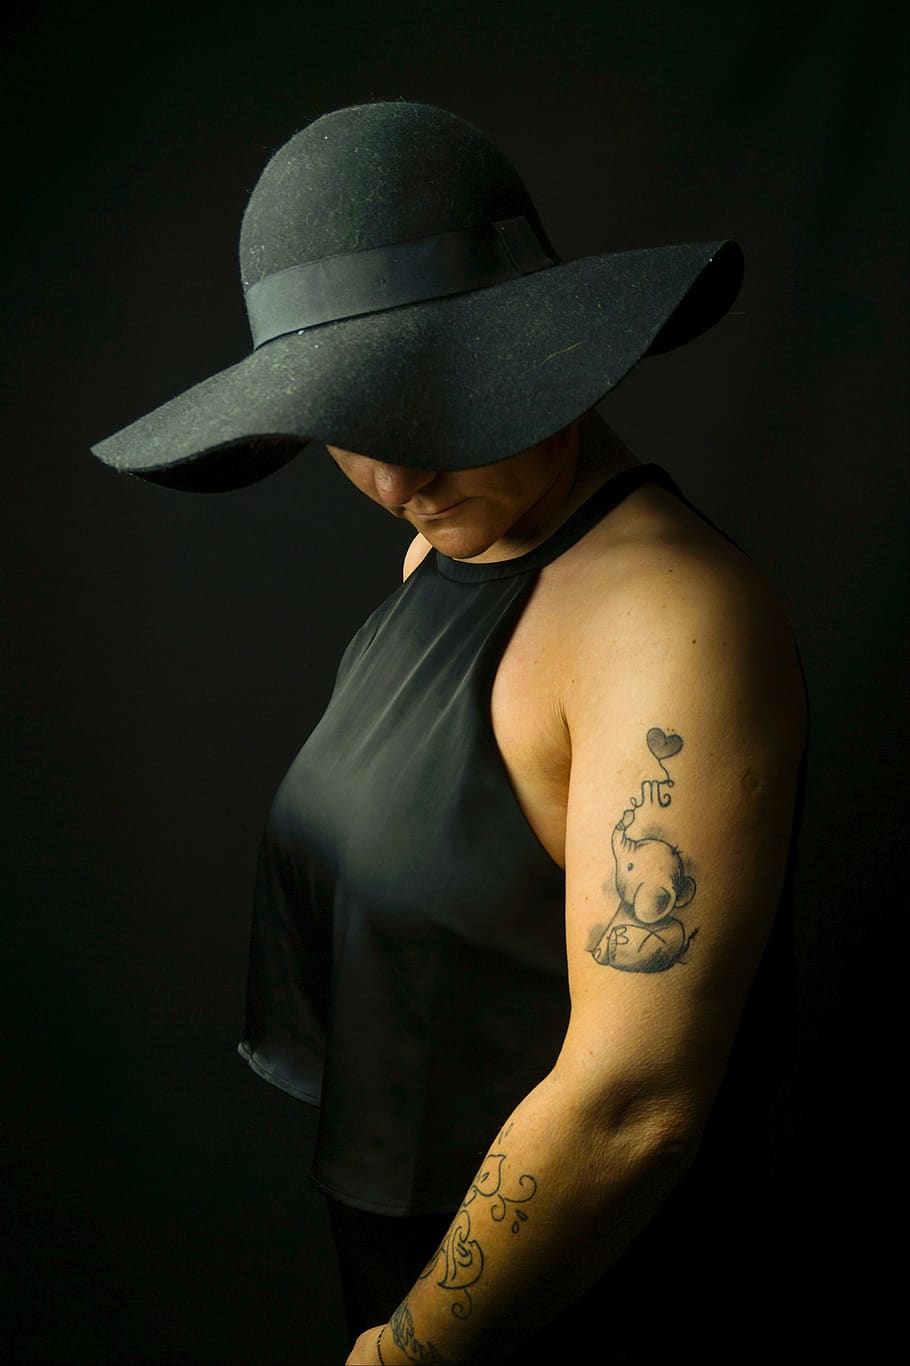 dark, melancholic, hat, black, tattooed, tattoo, human, woman, shadow, arm